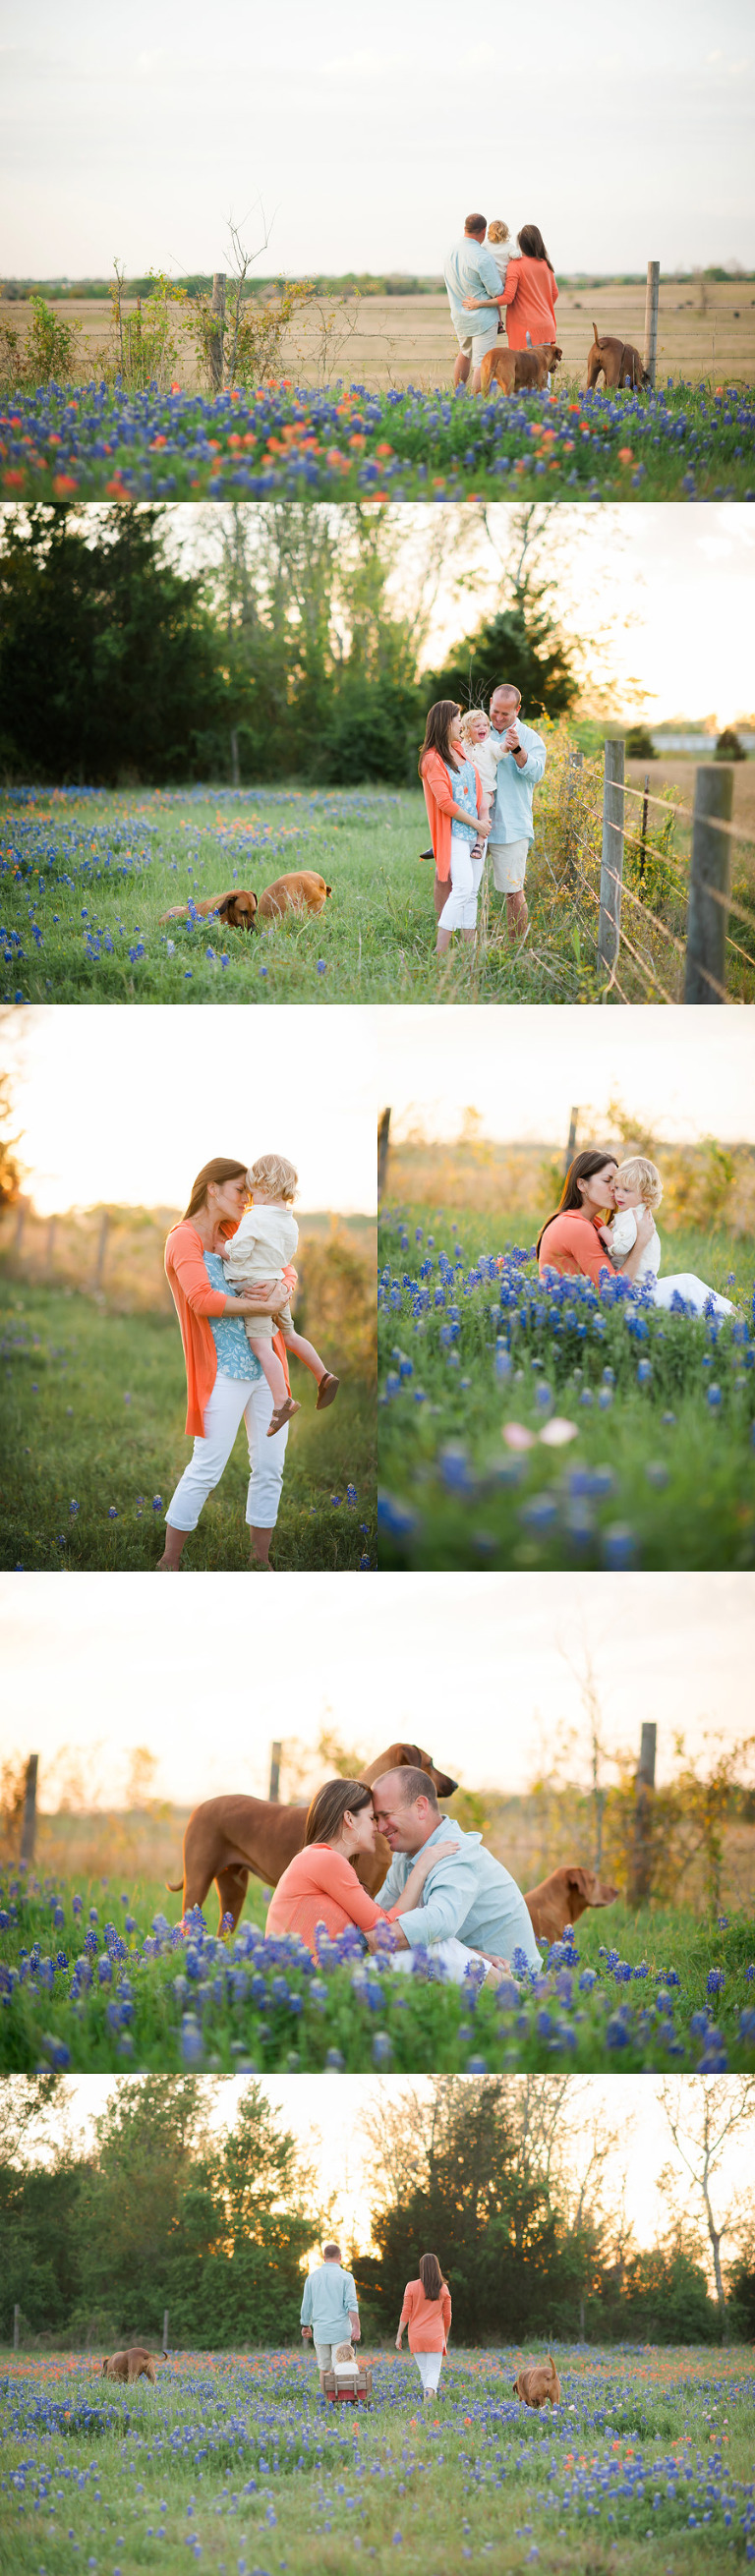 Family loving Spring... Family Houston Photographer - Houston Family Photographer 